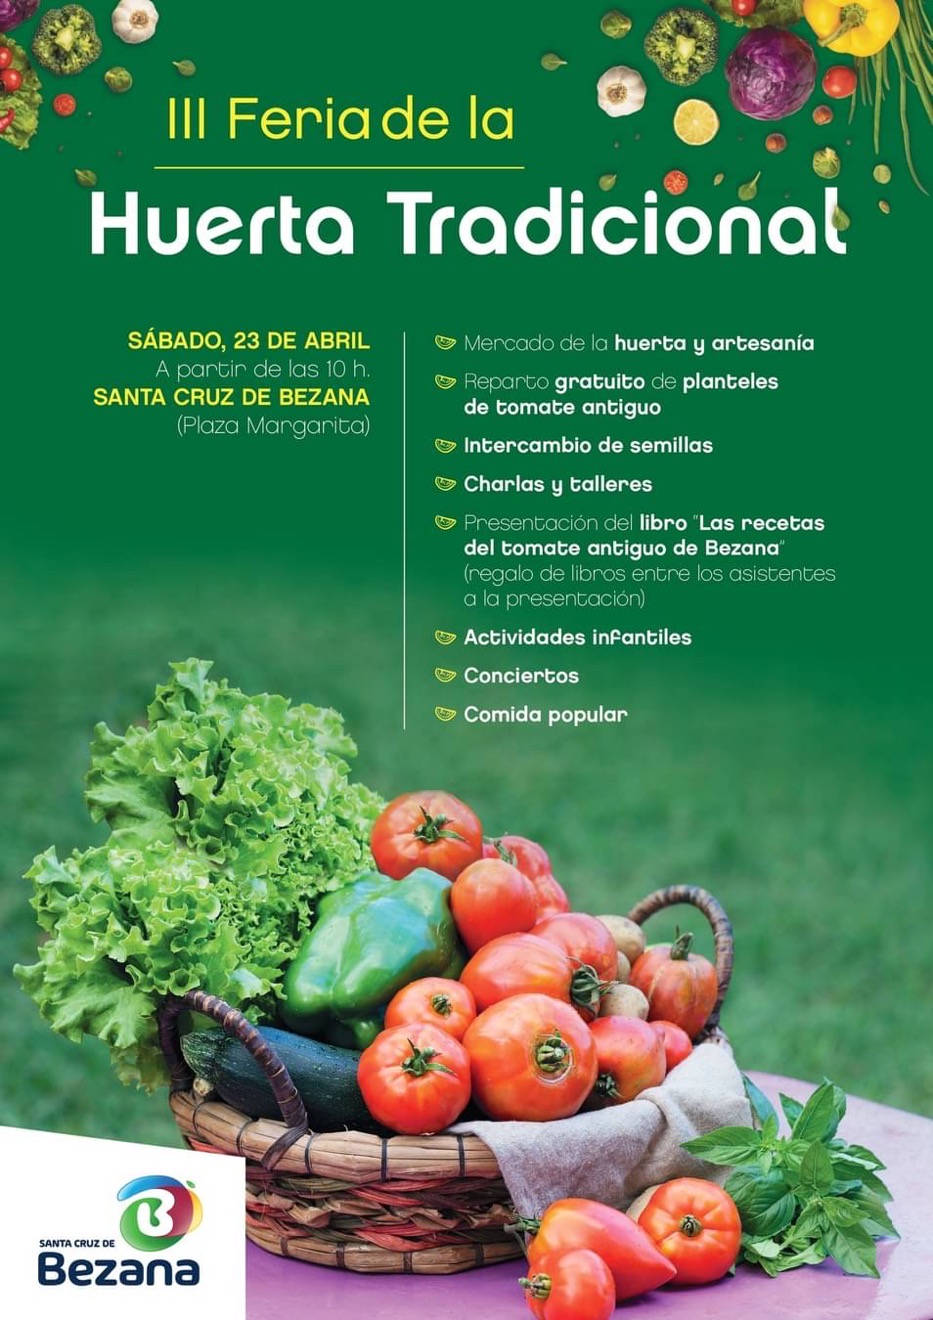 III Feria de la Huerta Tradicional de Bezana 2022